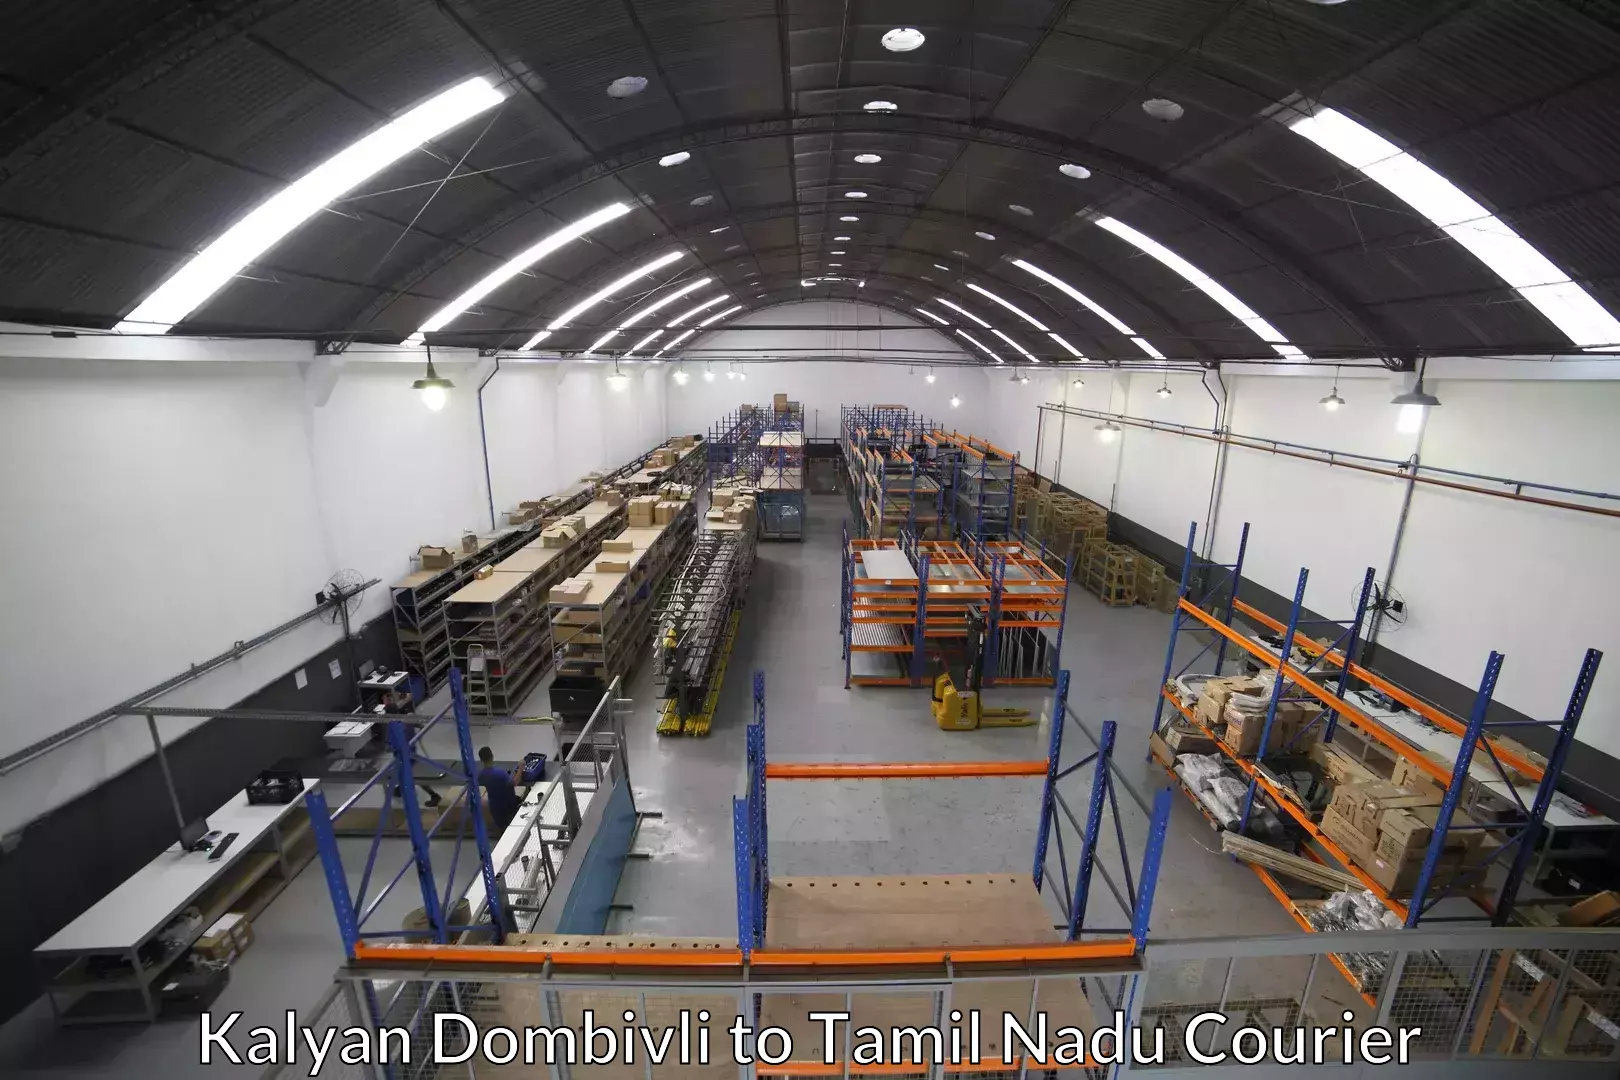 Furniture moving experts Kalyan Dombivli to Perambalur